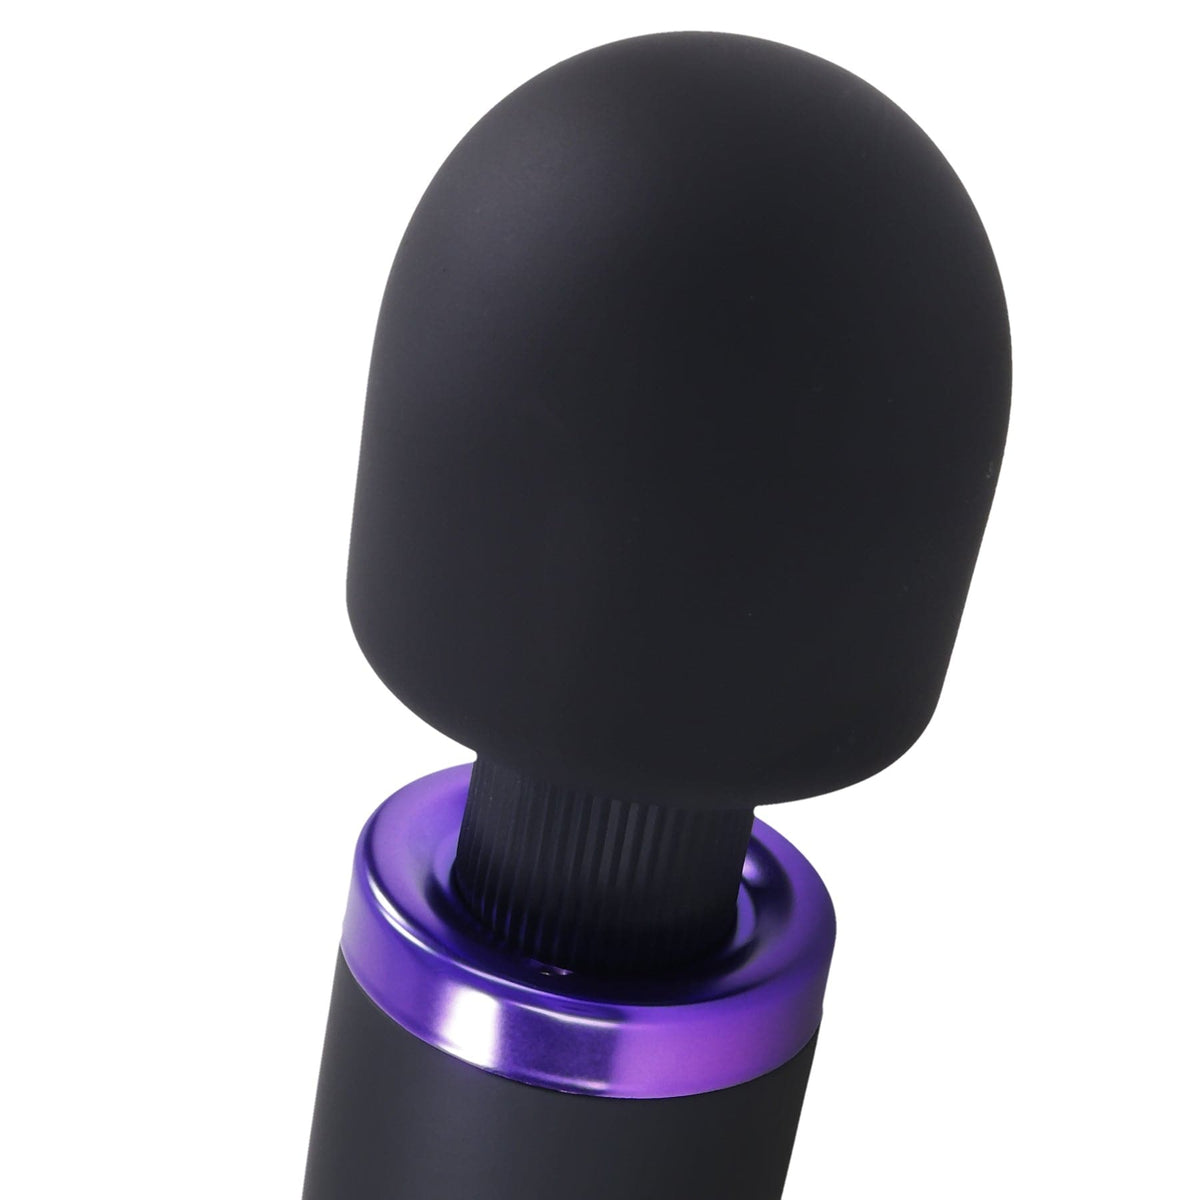 Merci - Varita eléctrica recargable - Ultra - Potente masajeador con varita de silicona - Negro